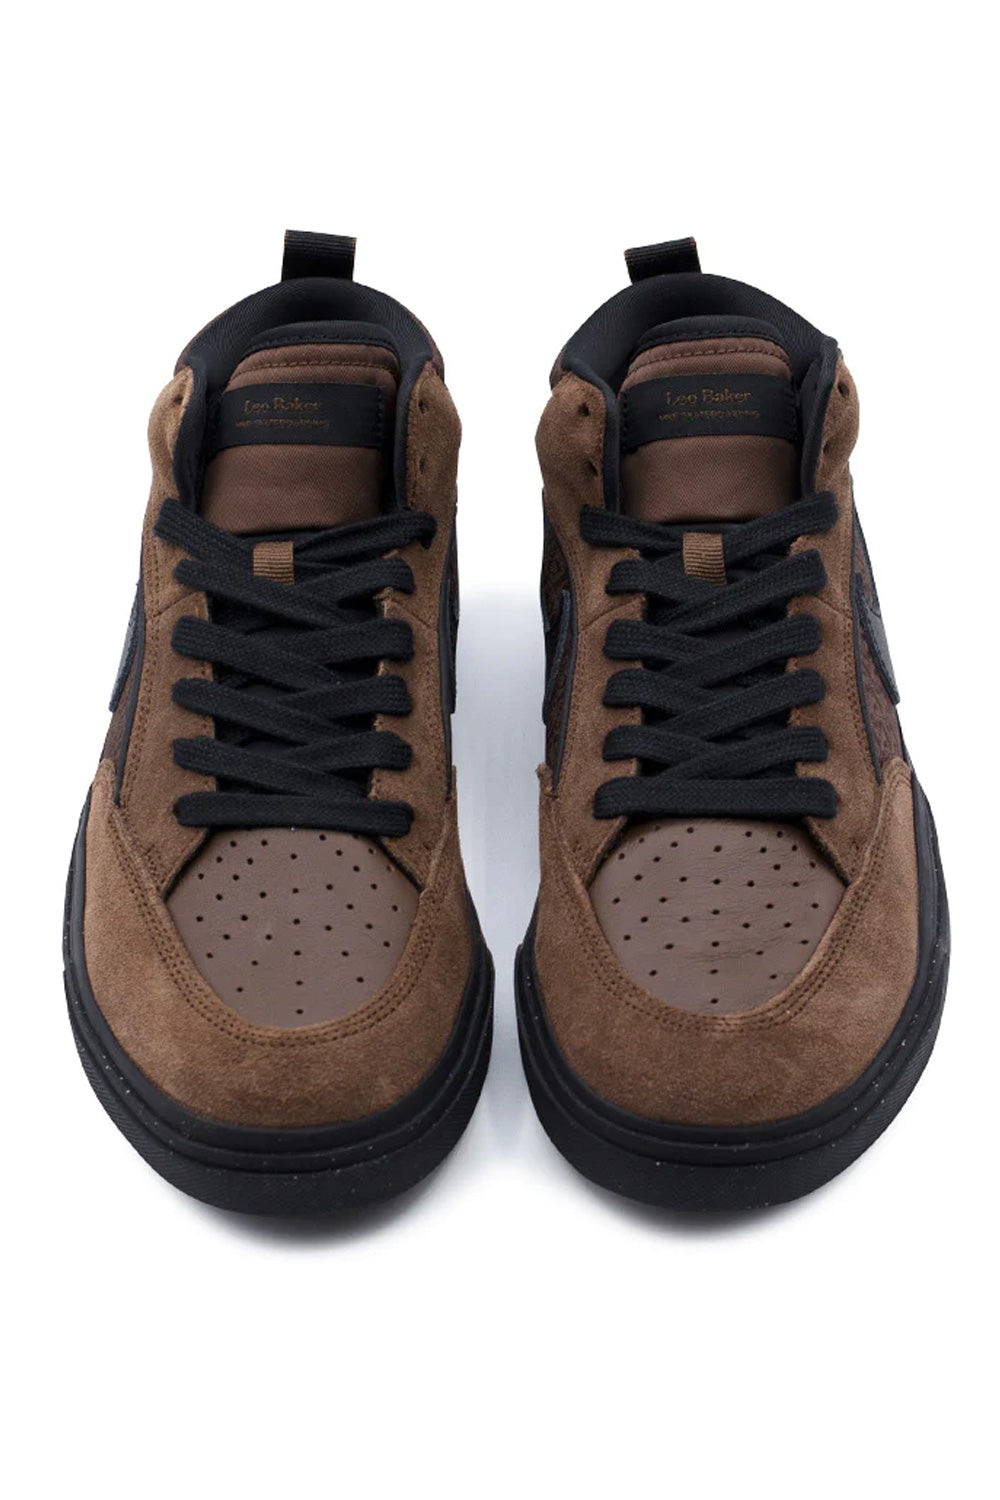 Nike SB React Leo Shoe Cacao Wow / Black / Cacao Wow - BONKERS